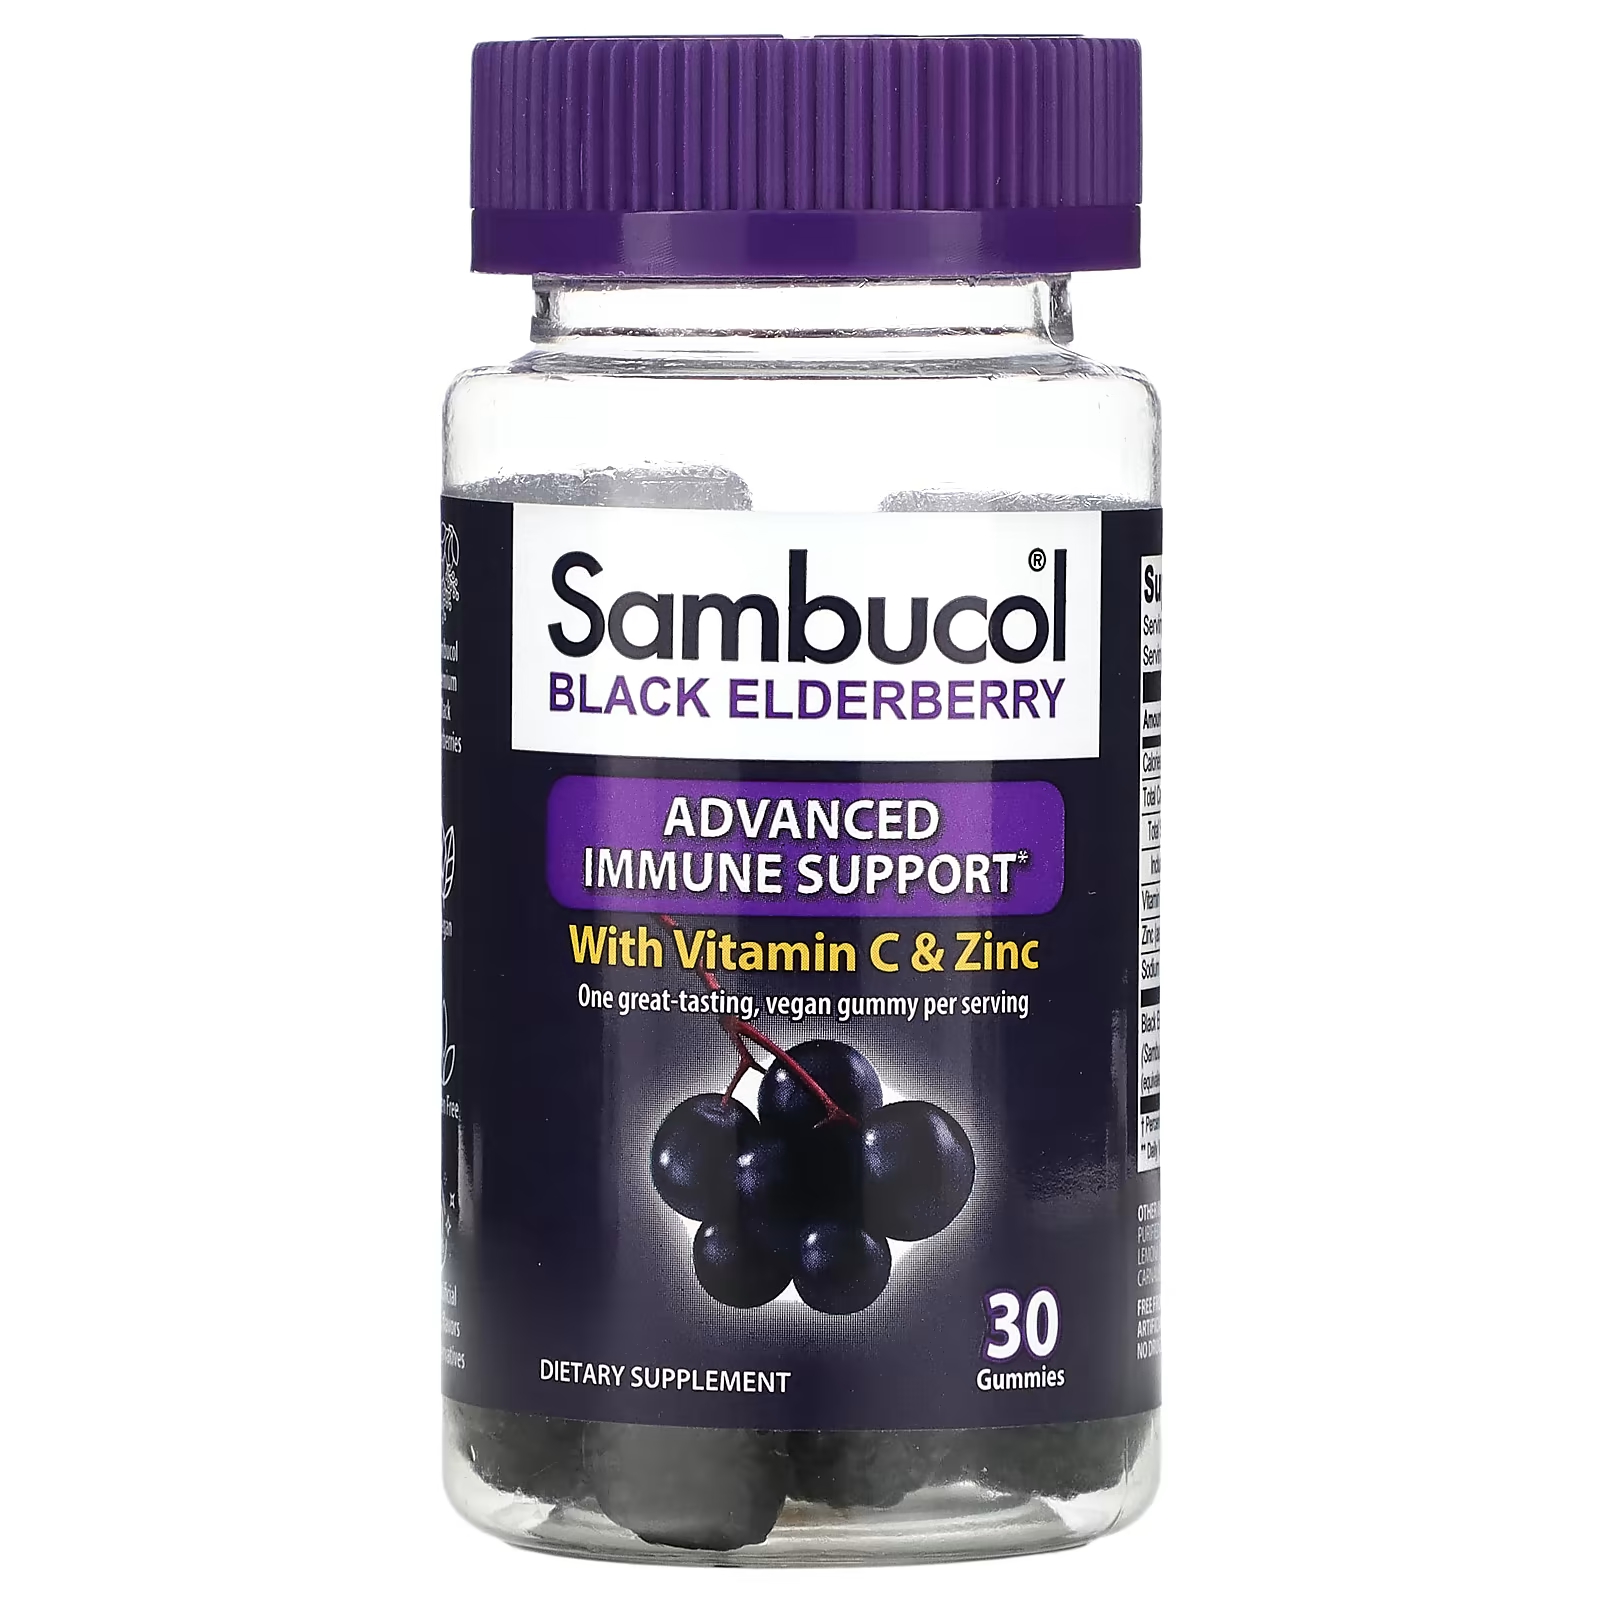 Поддержка иммунитета Sambucol с витамином С и цинком, 30 жевательных таблеток sambucol черная бузина жевательные таблетки для поддержки иммунитета с витамином c и цинком вкус натуральных ягод 60 жевательных таблеток